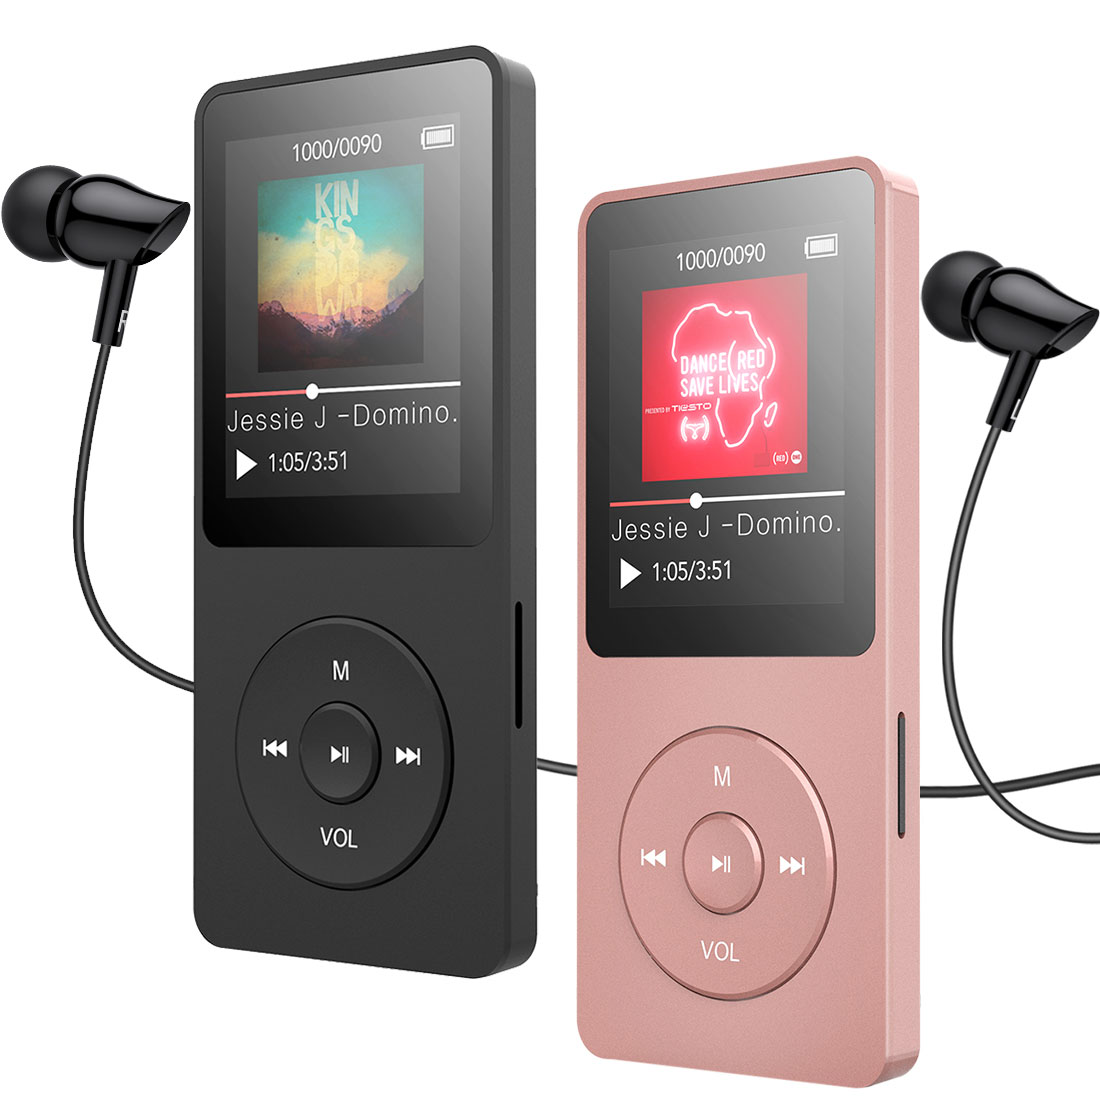 新発売の 業界トップクラス Bluetooth5.0 MP3プレーヤー Teptts mp3プレイヤー 音楽プレーヤー HiFi 超軽量